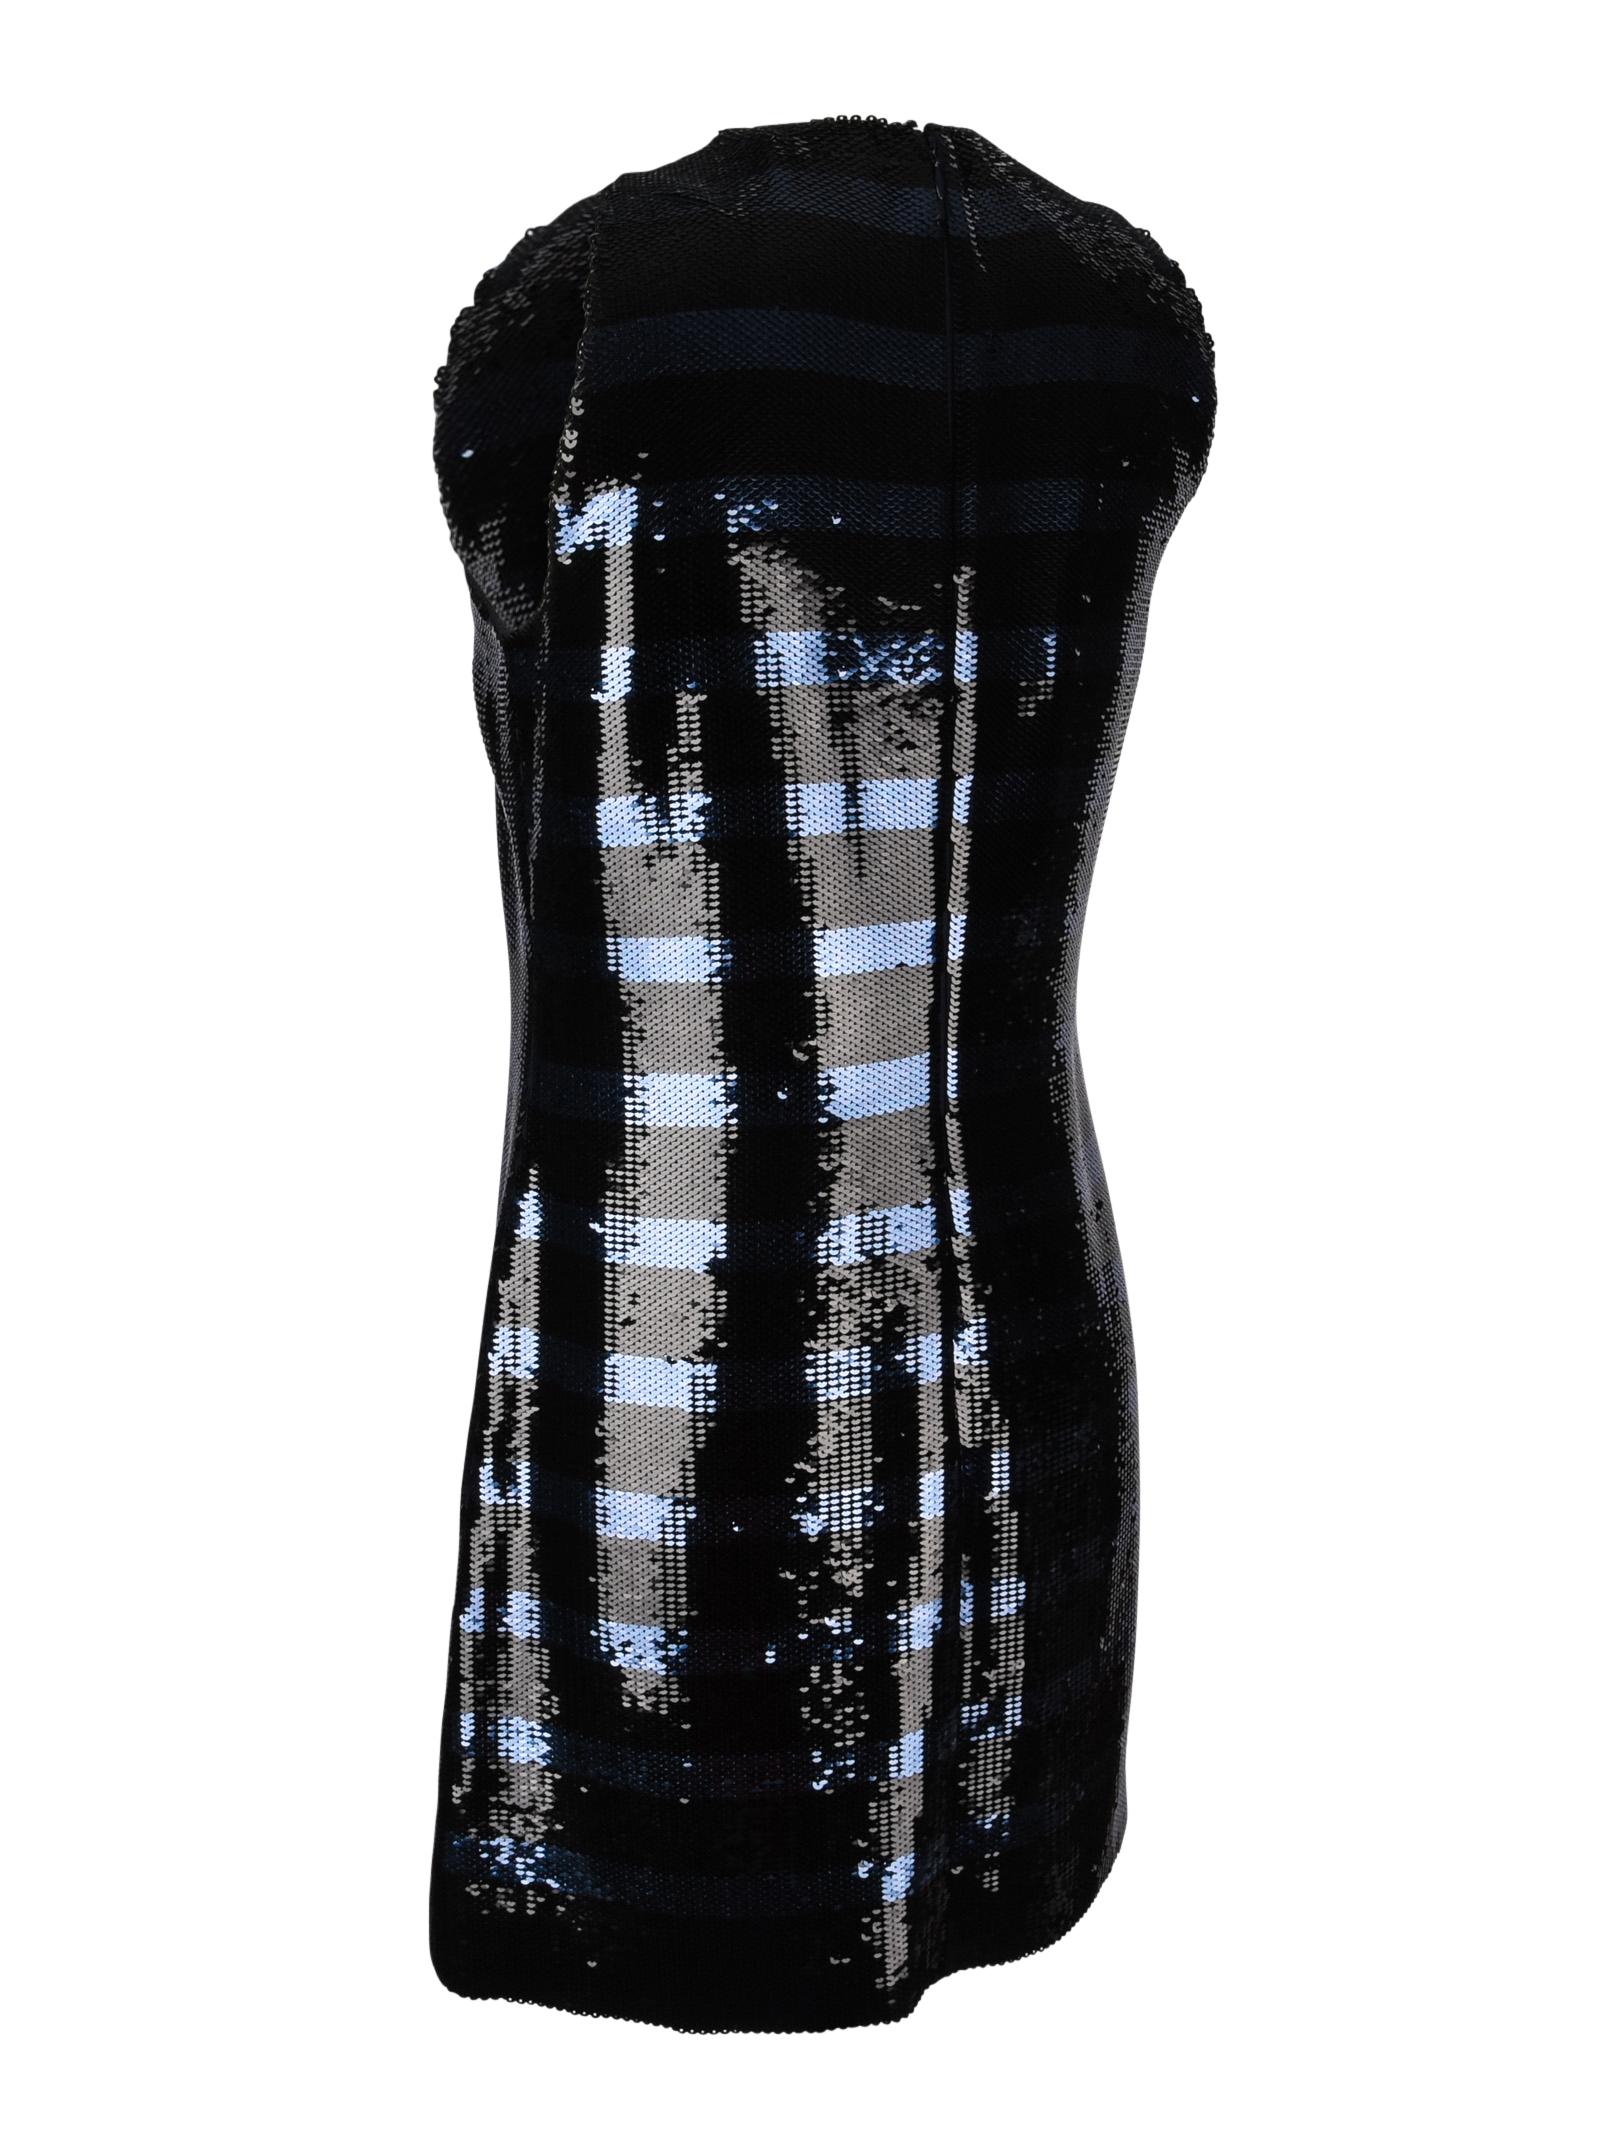 Christian Dior Dress Striped Sequin Embellished Navy / Black 6 3